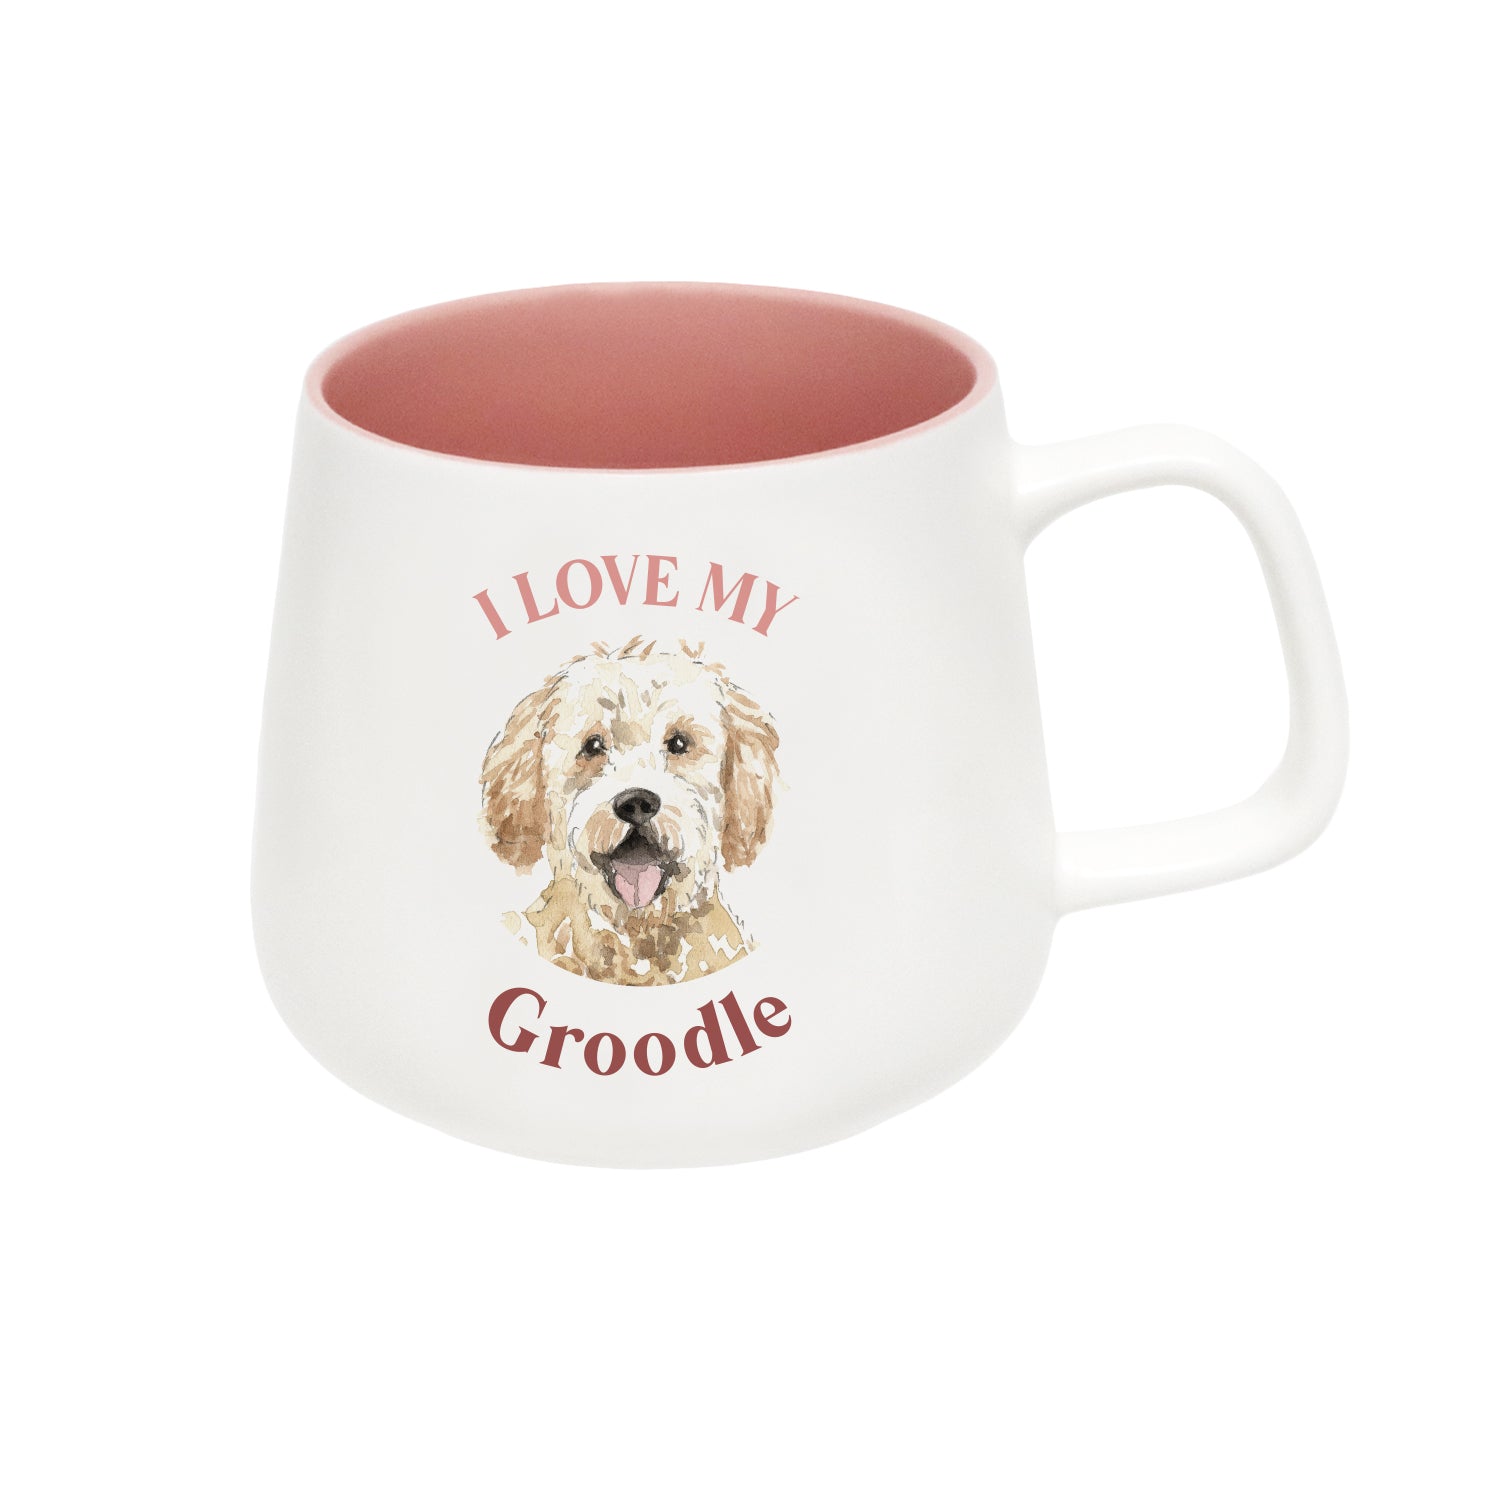 I Love My Groodle Mug